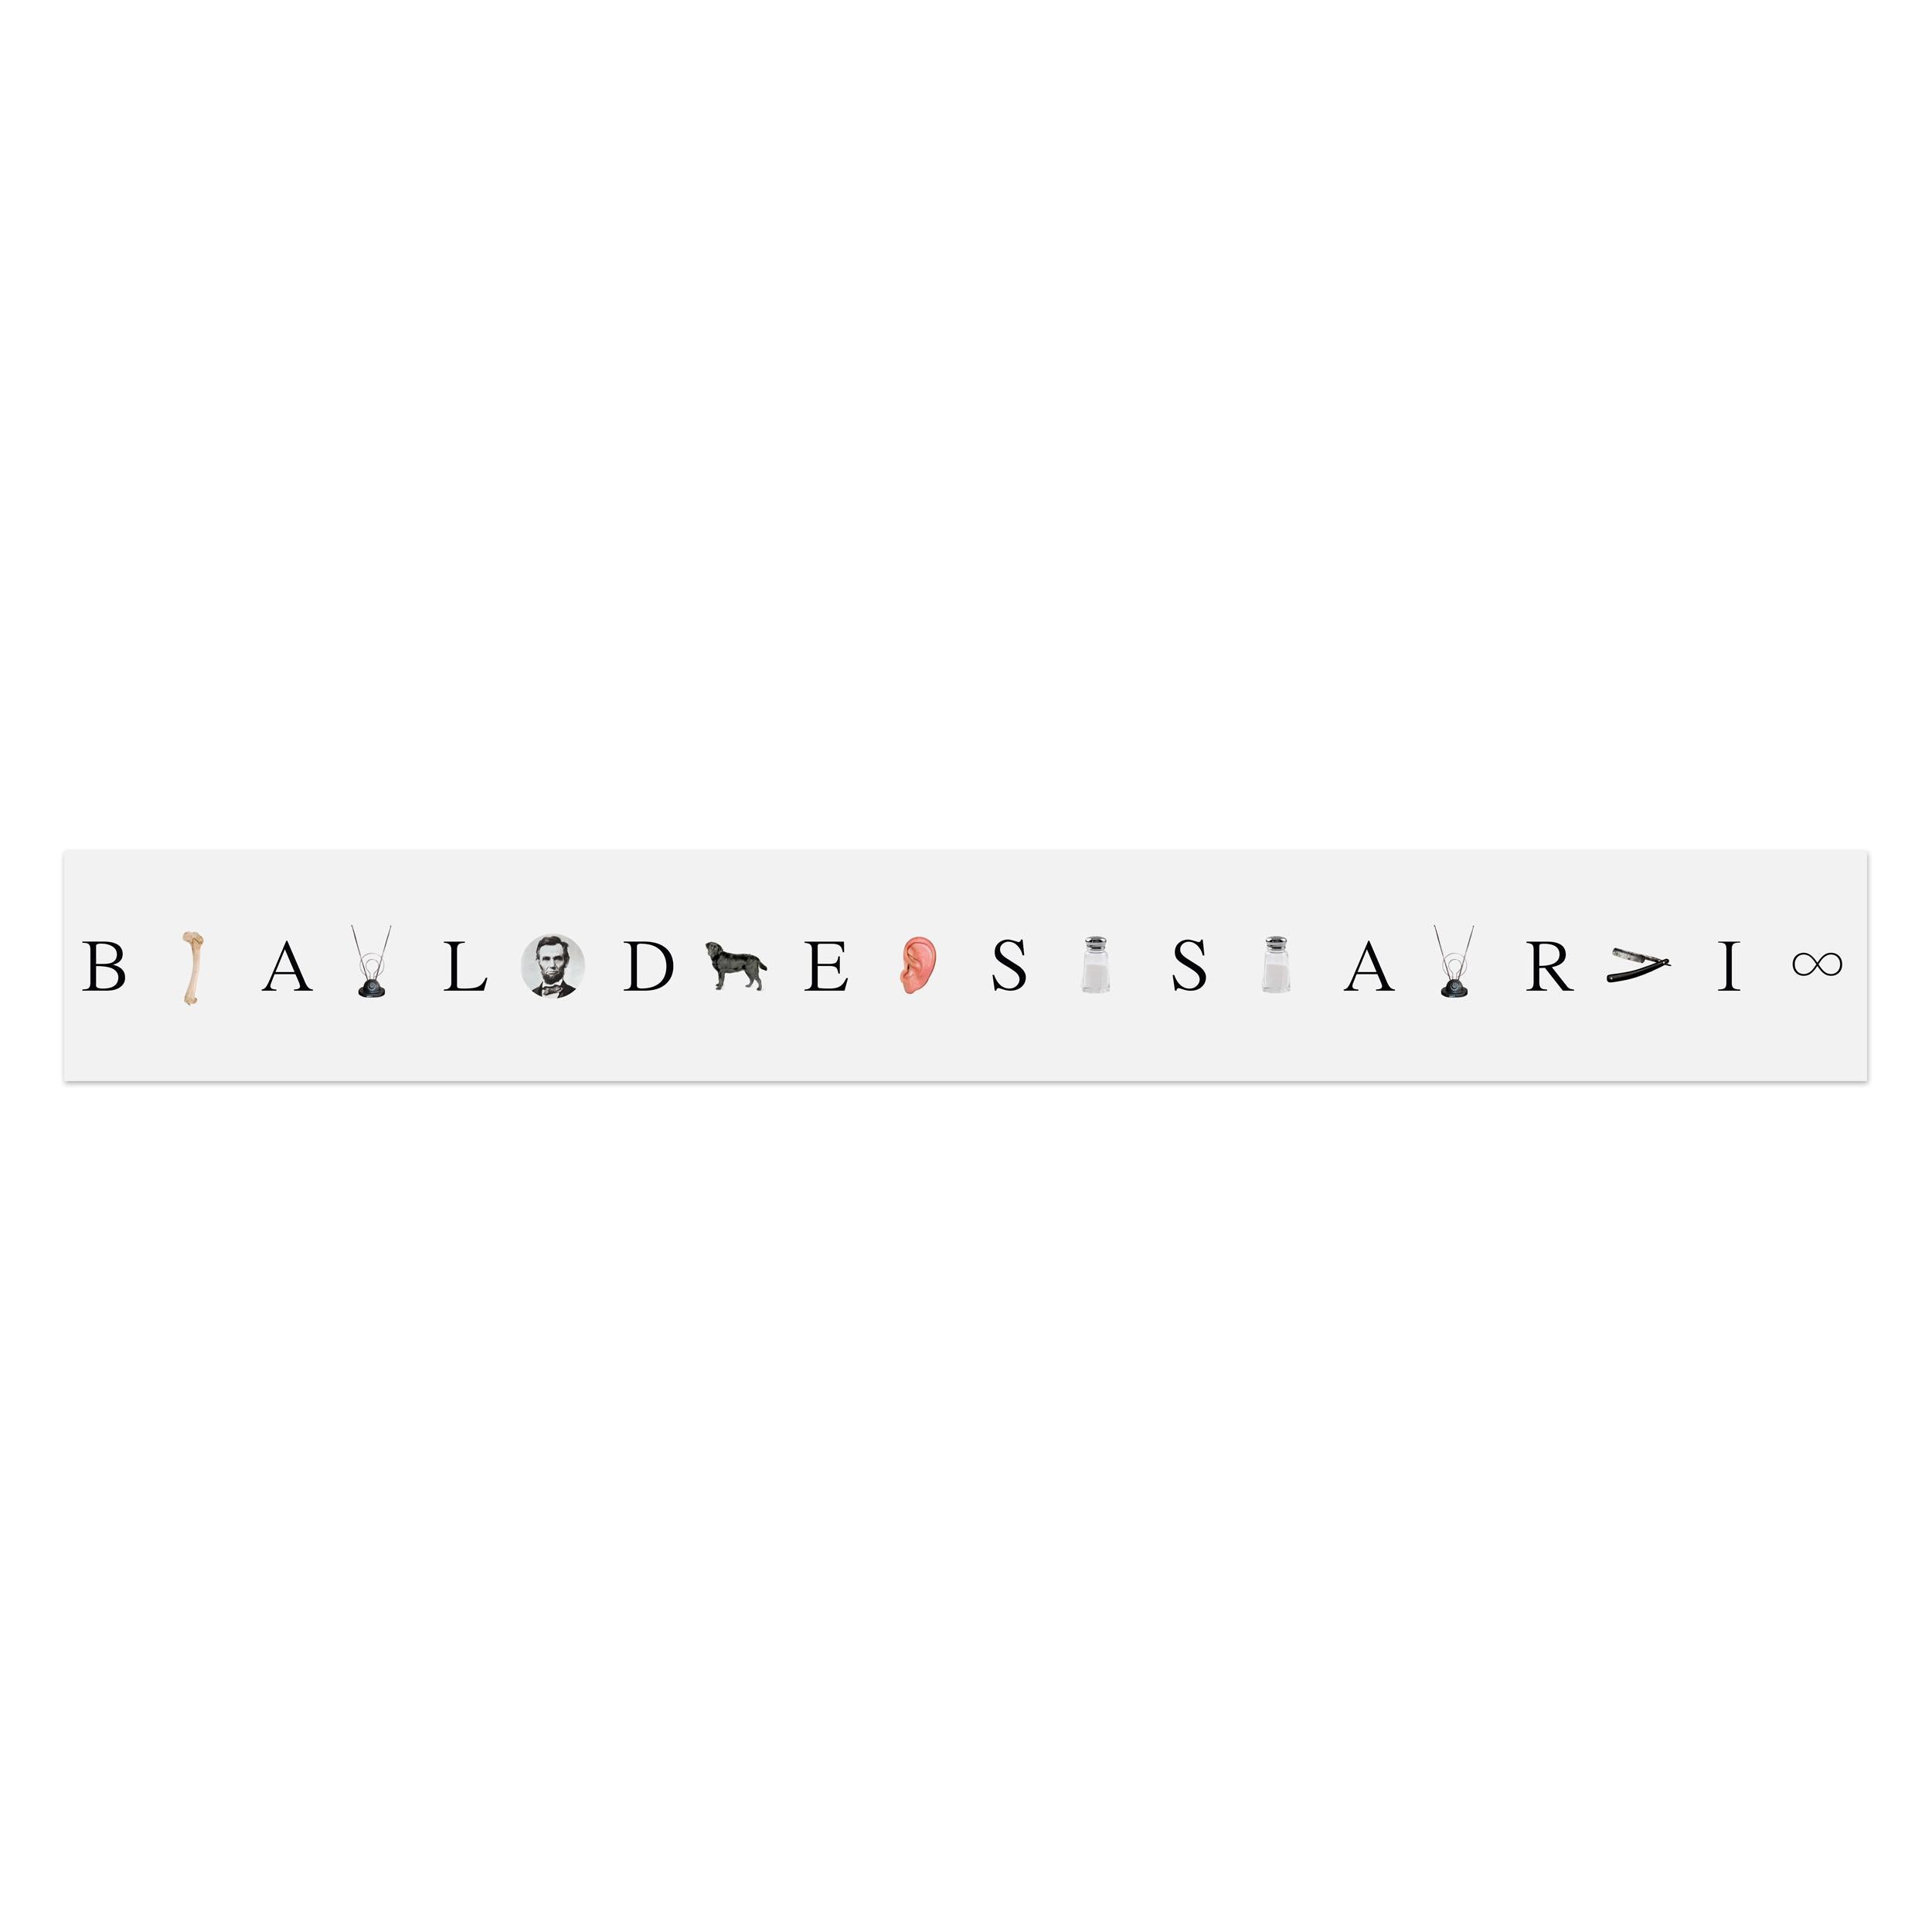 John Baldessari (Amerikaner, 1931-2020)
Gib mir eine Zwei, gib mir eine Eins ..., 2009
Medium: 10-teiliges Leporello, digitaler Pigmentdruck, auf Fotopapier
Abmessungen: 32 × 250 cm (12½ x 98½ in)
Auflage von 75: Handsigniert und nummeriert auf